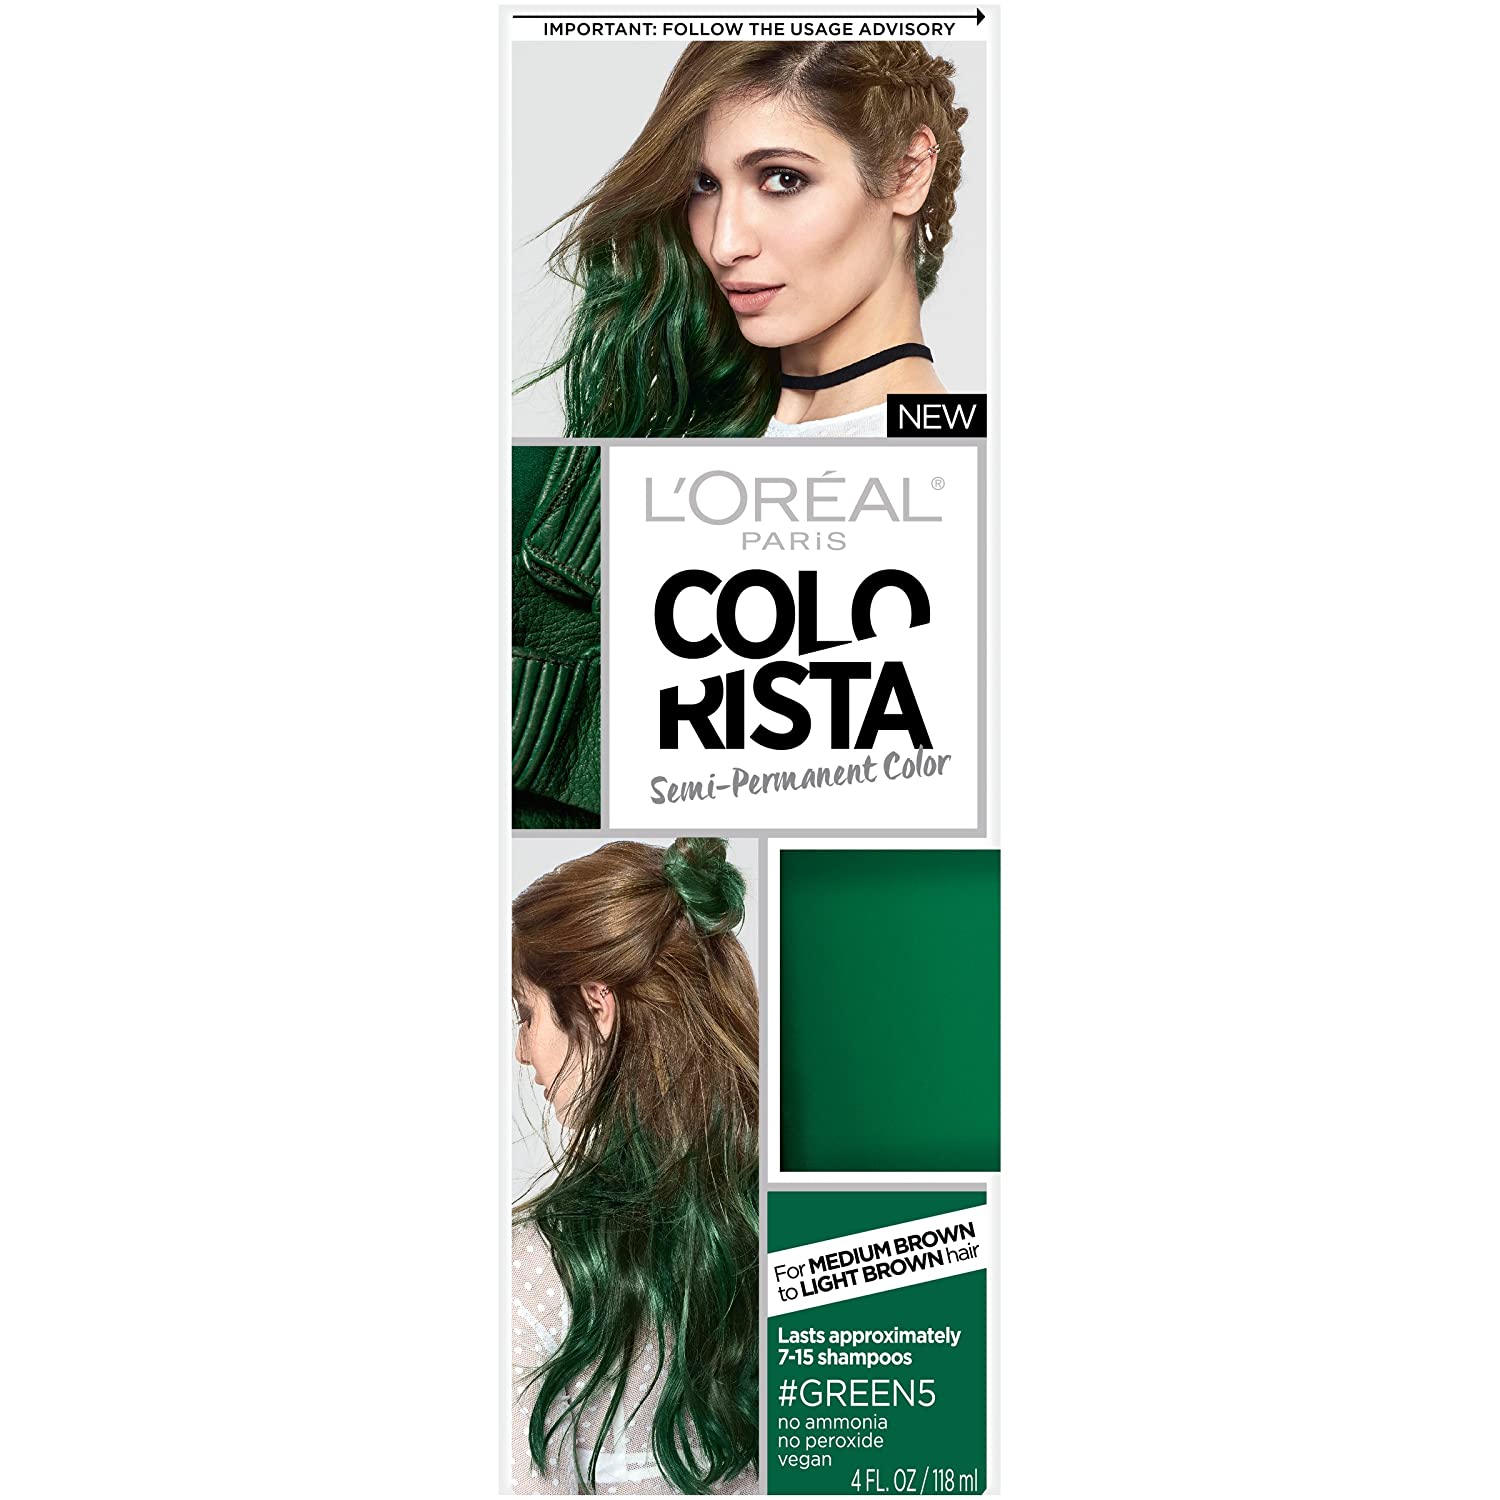  L'Oreal Paris Hair Color Colorista Semi-Permanent for Brunette Hair